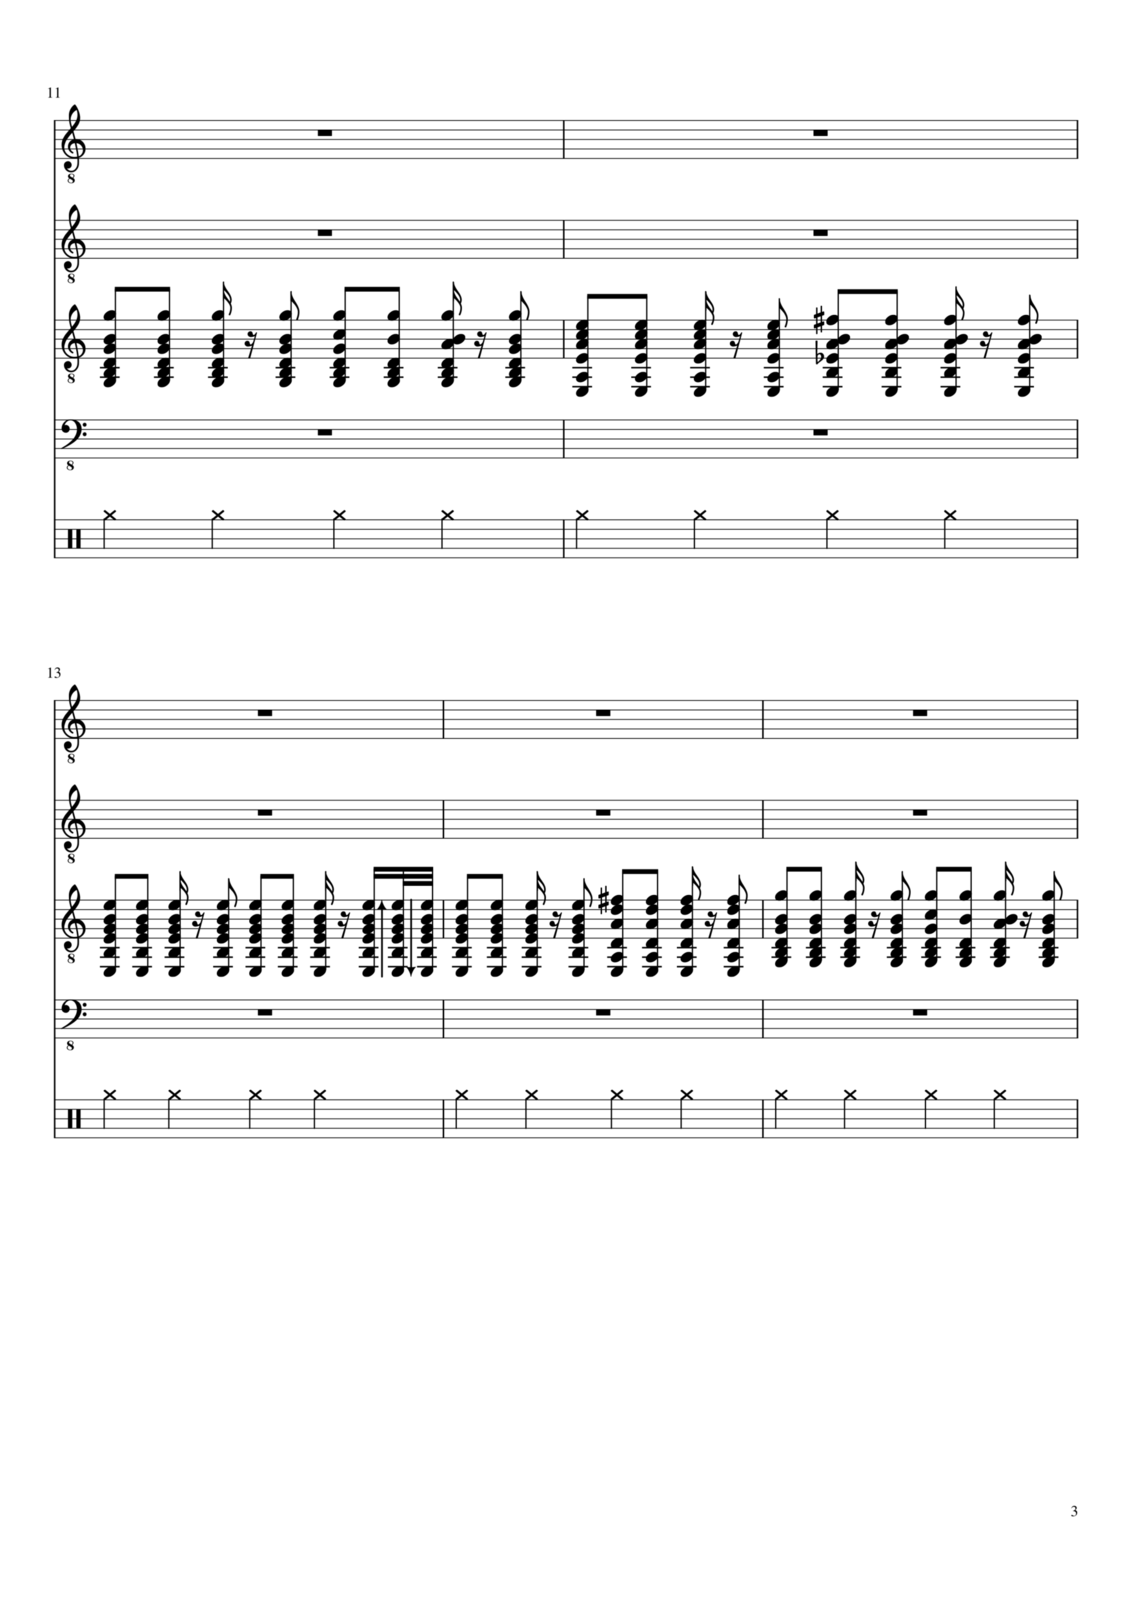 Vechnaya molodost slide, Image 3